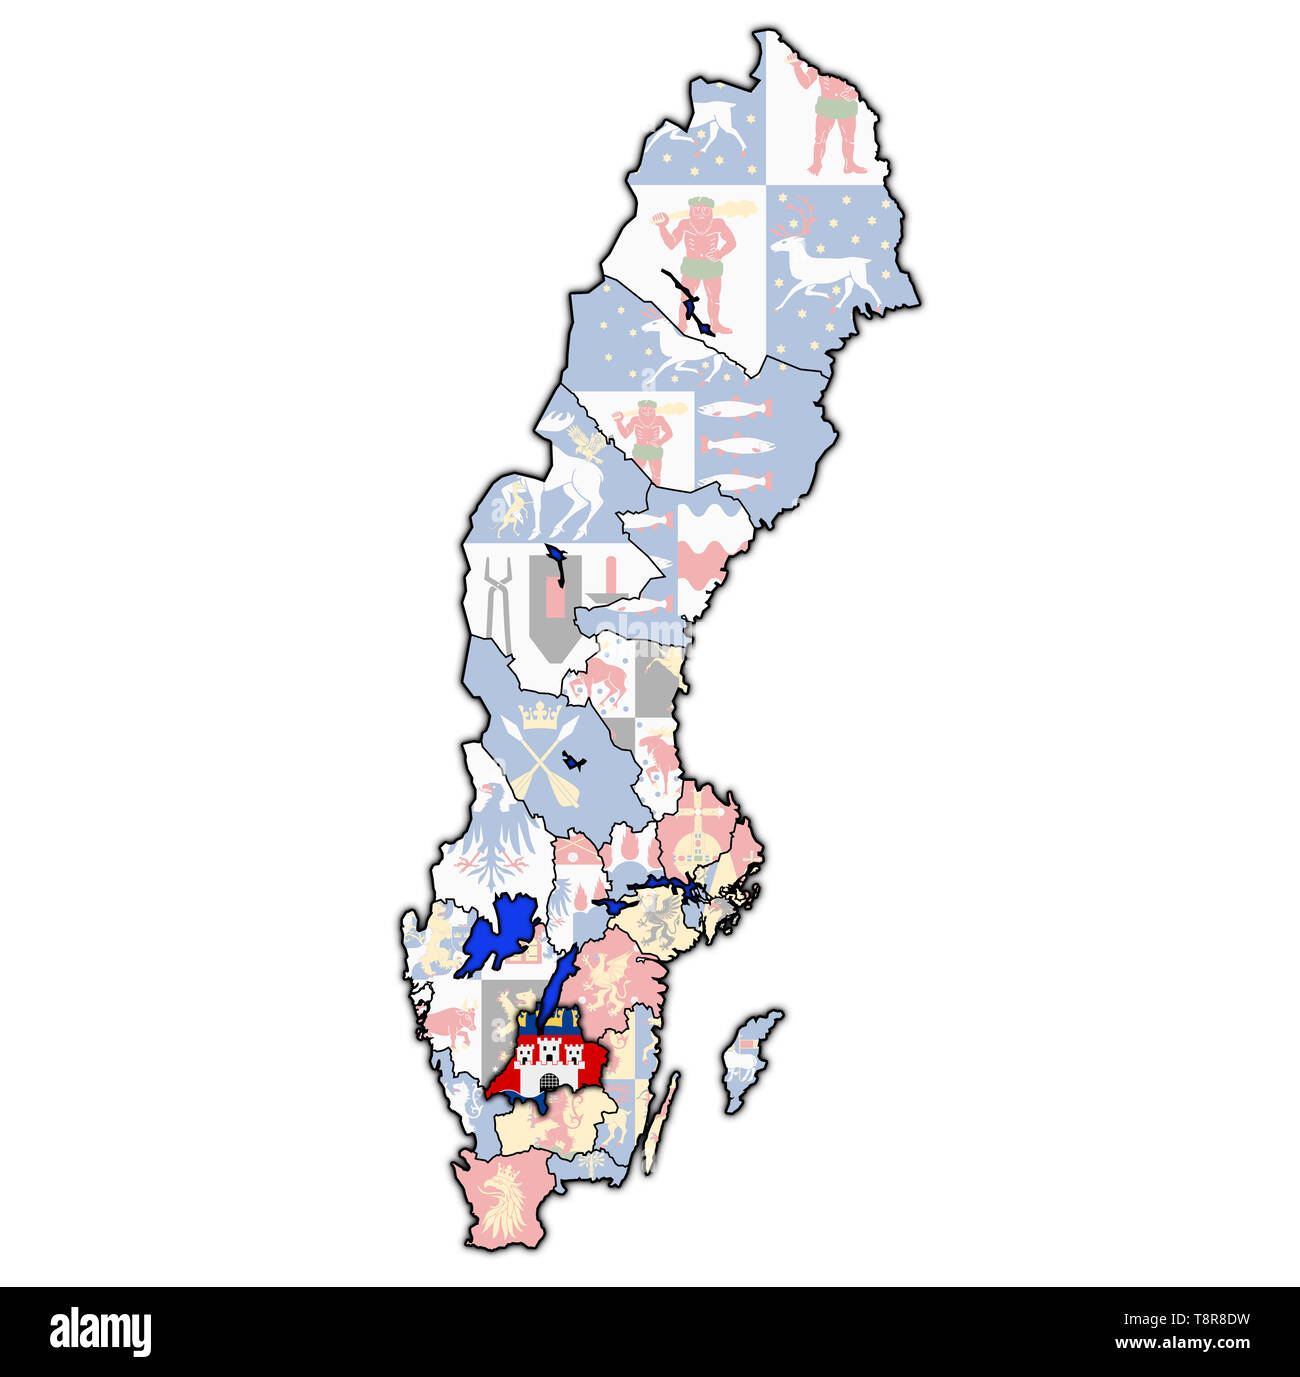 Pavillon de Jonkoping county la carte des divisions administratives de la Suède avec clipping path Banque D'Images